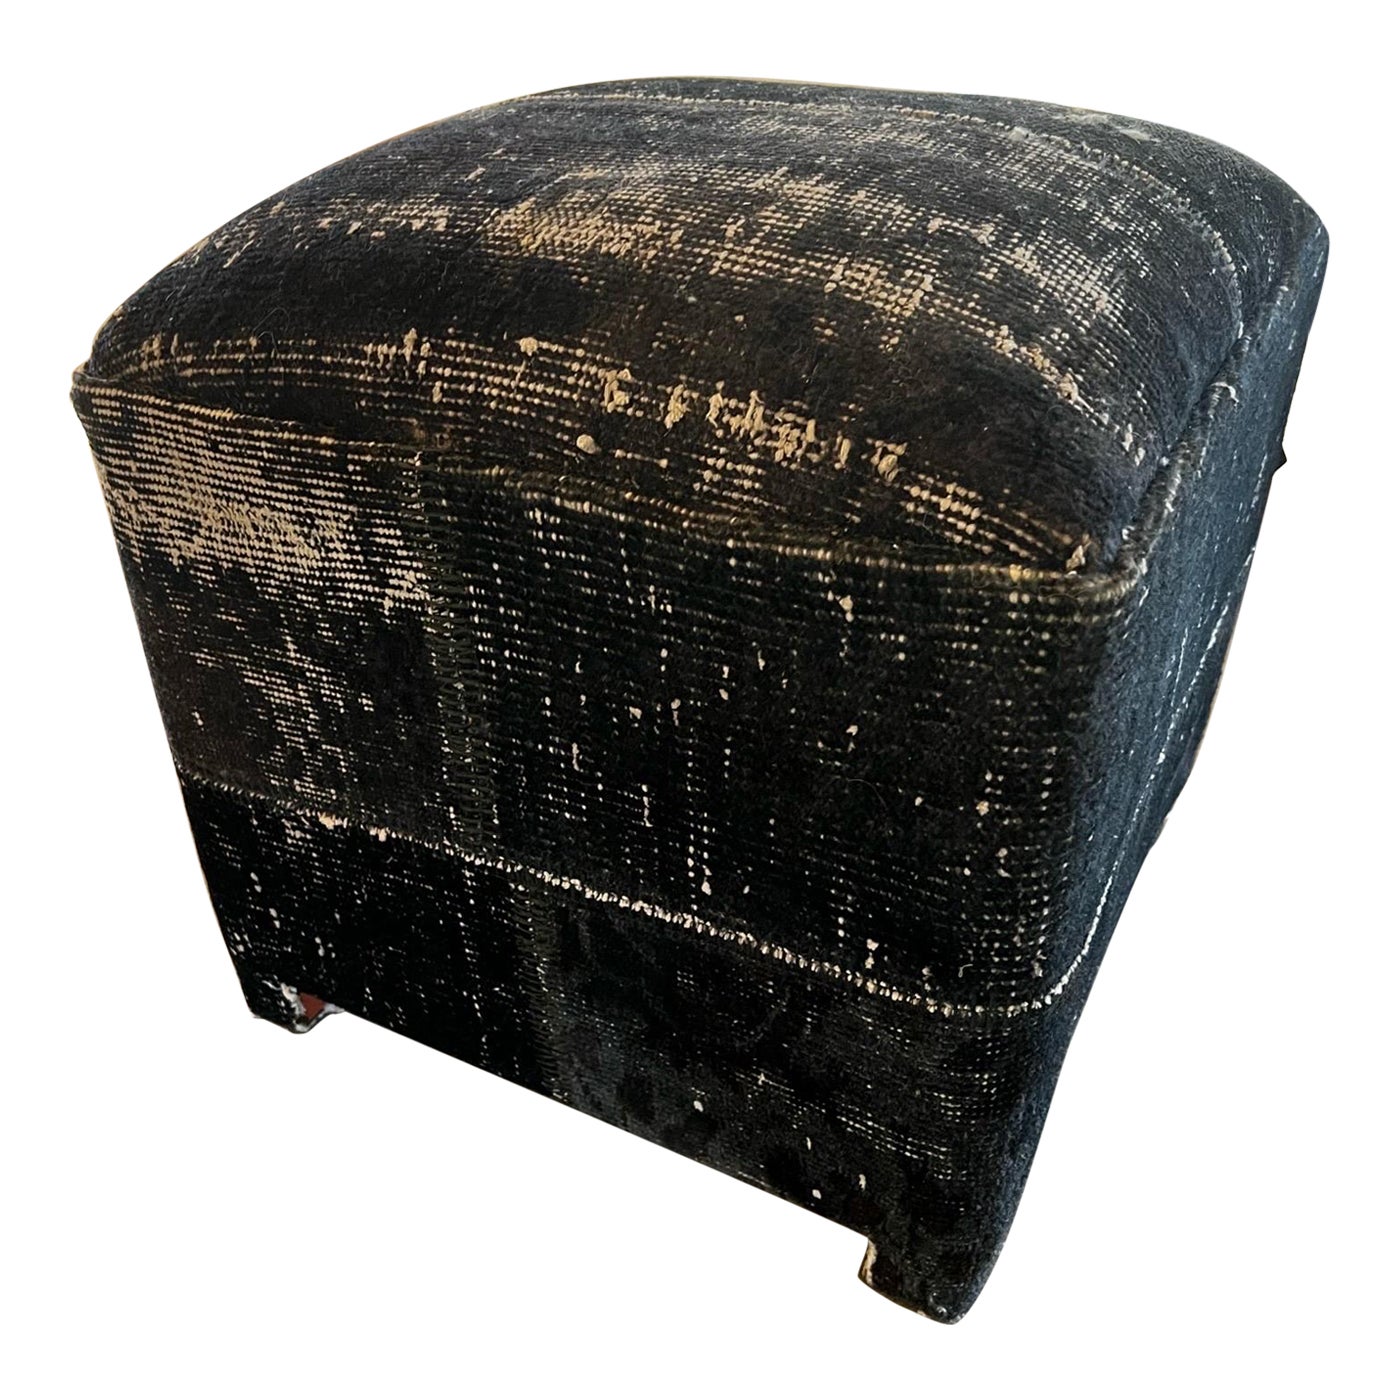 Antique Turkish Textile (black) Ottoman/Footstool/Pouf 